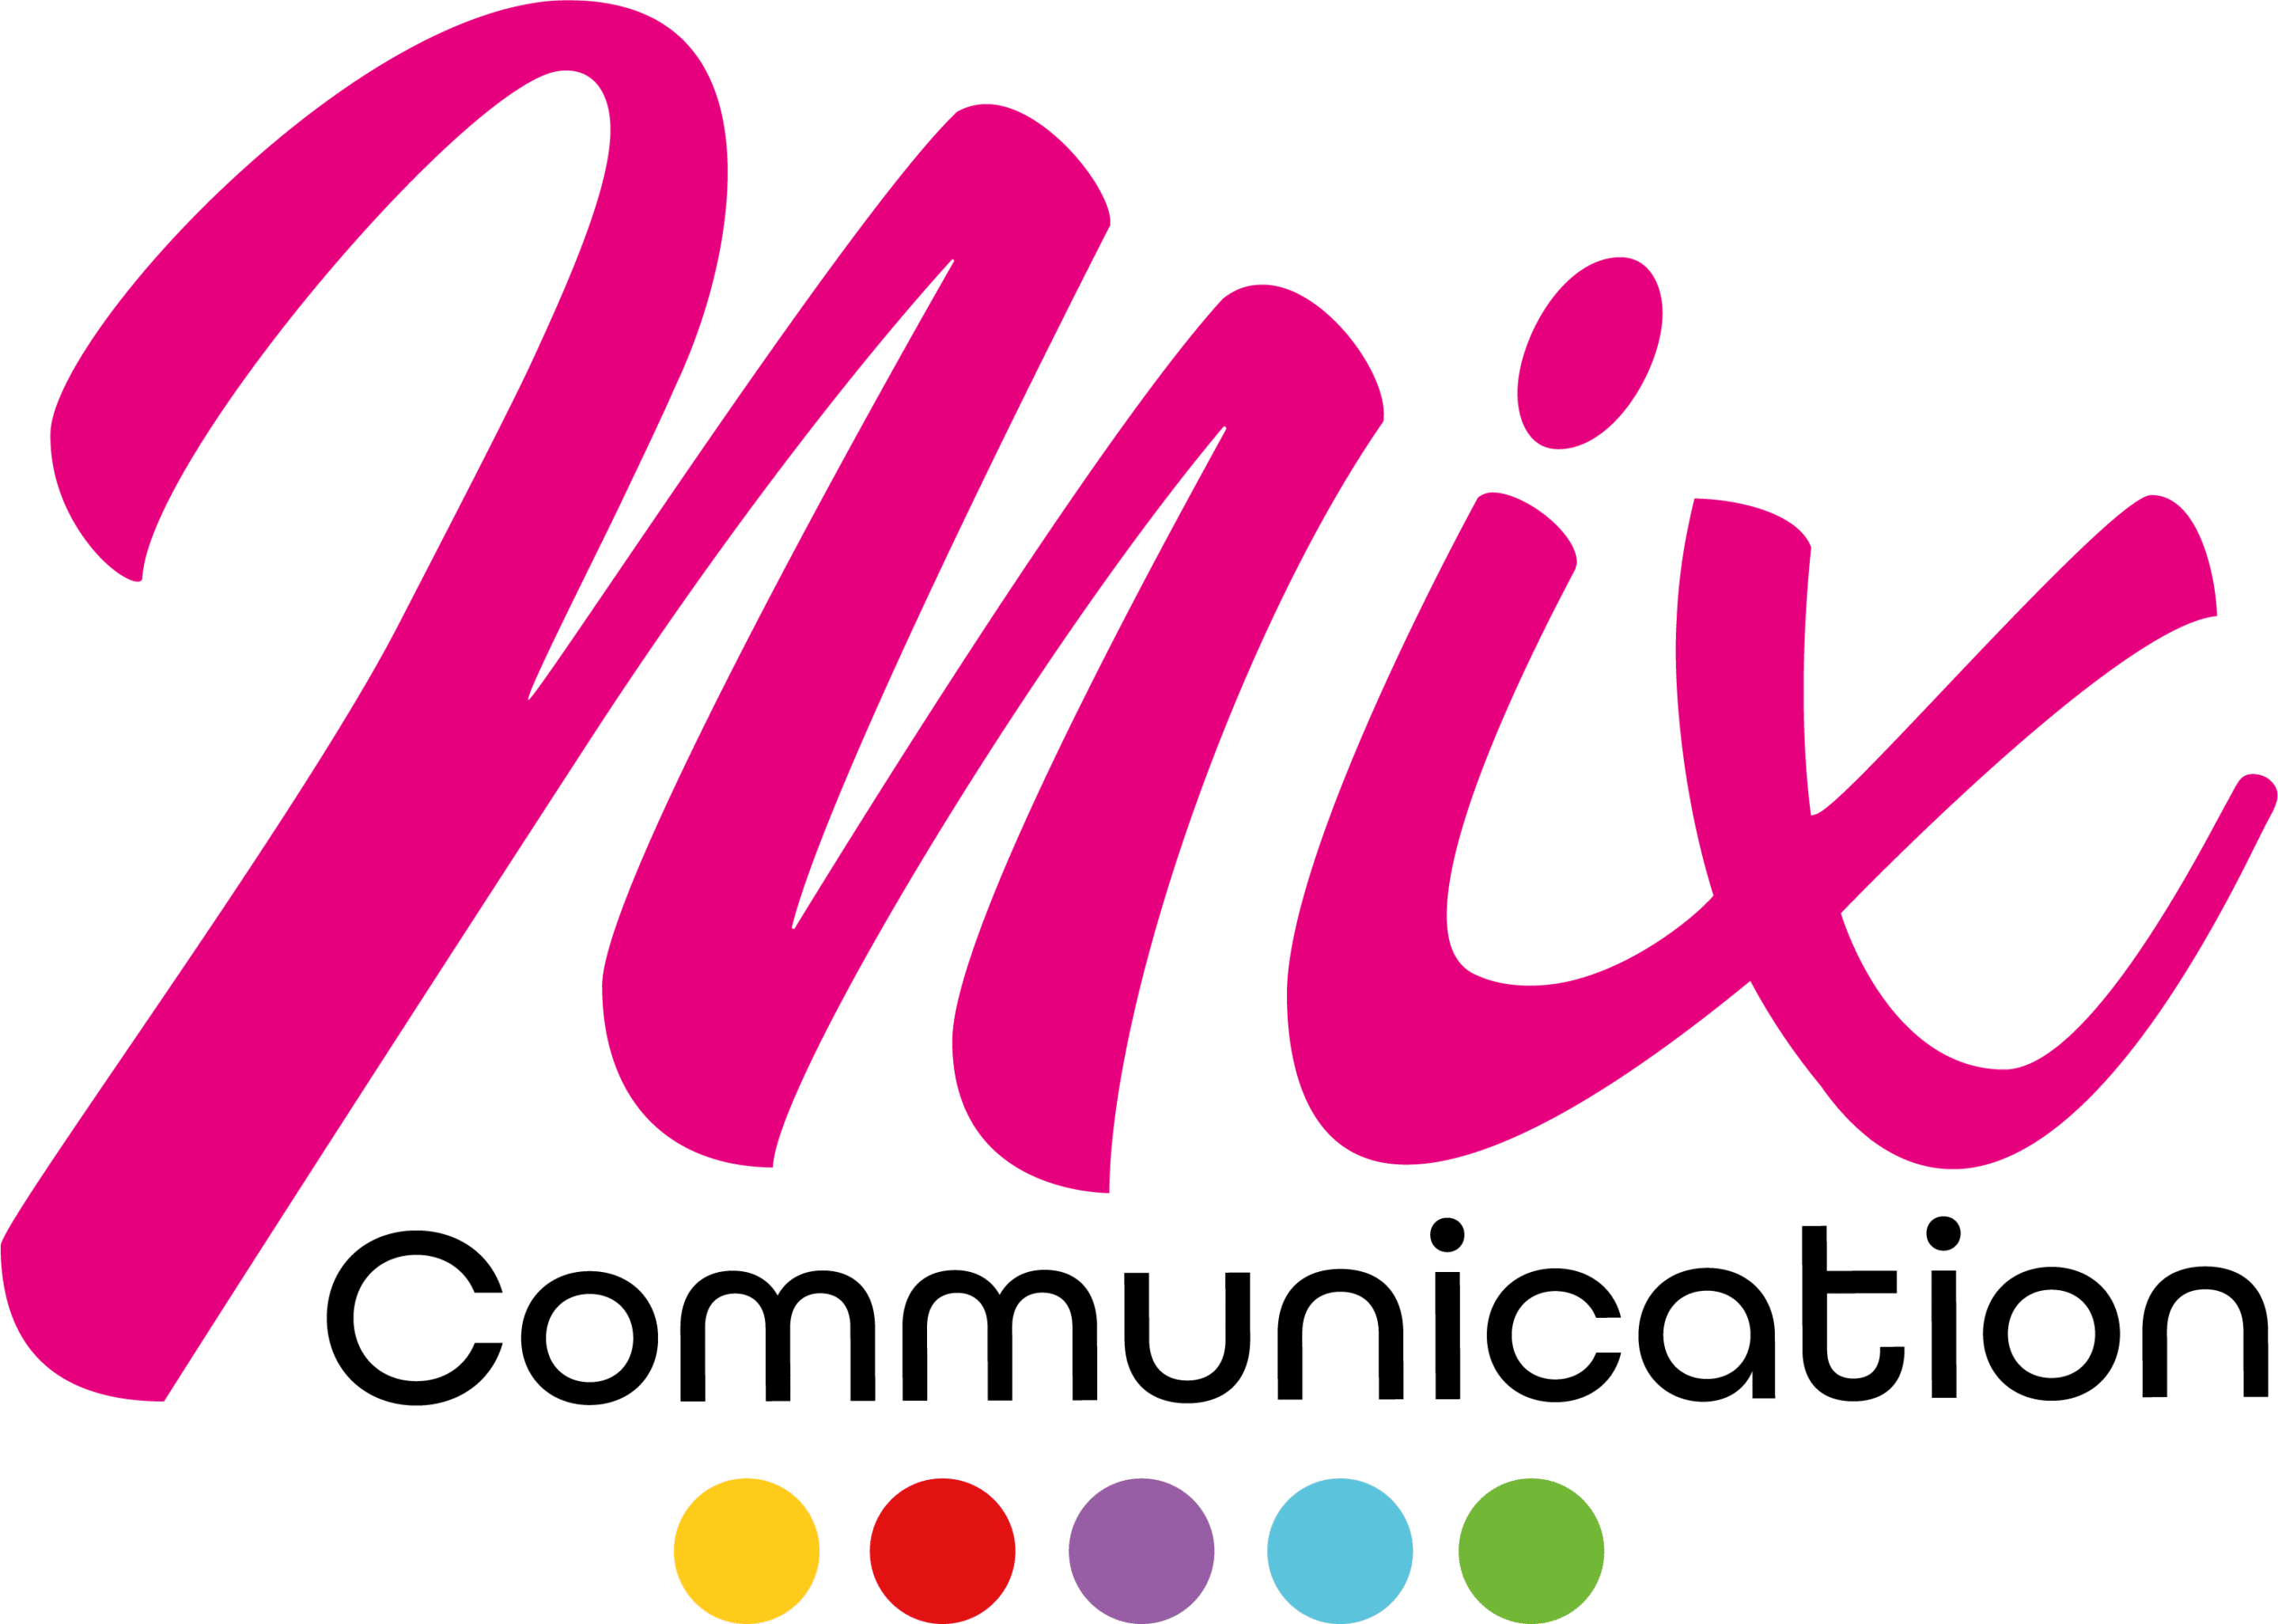 Mix communication